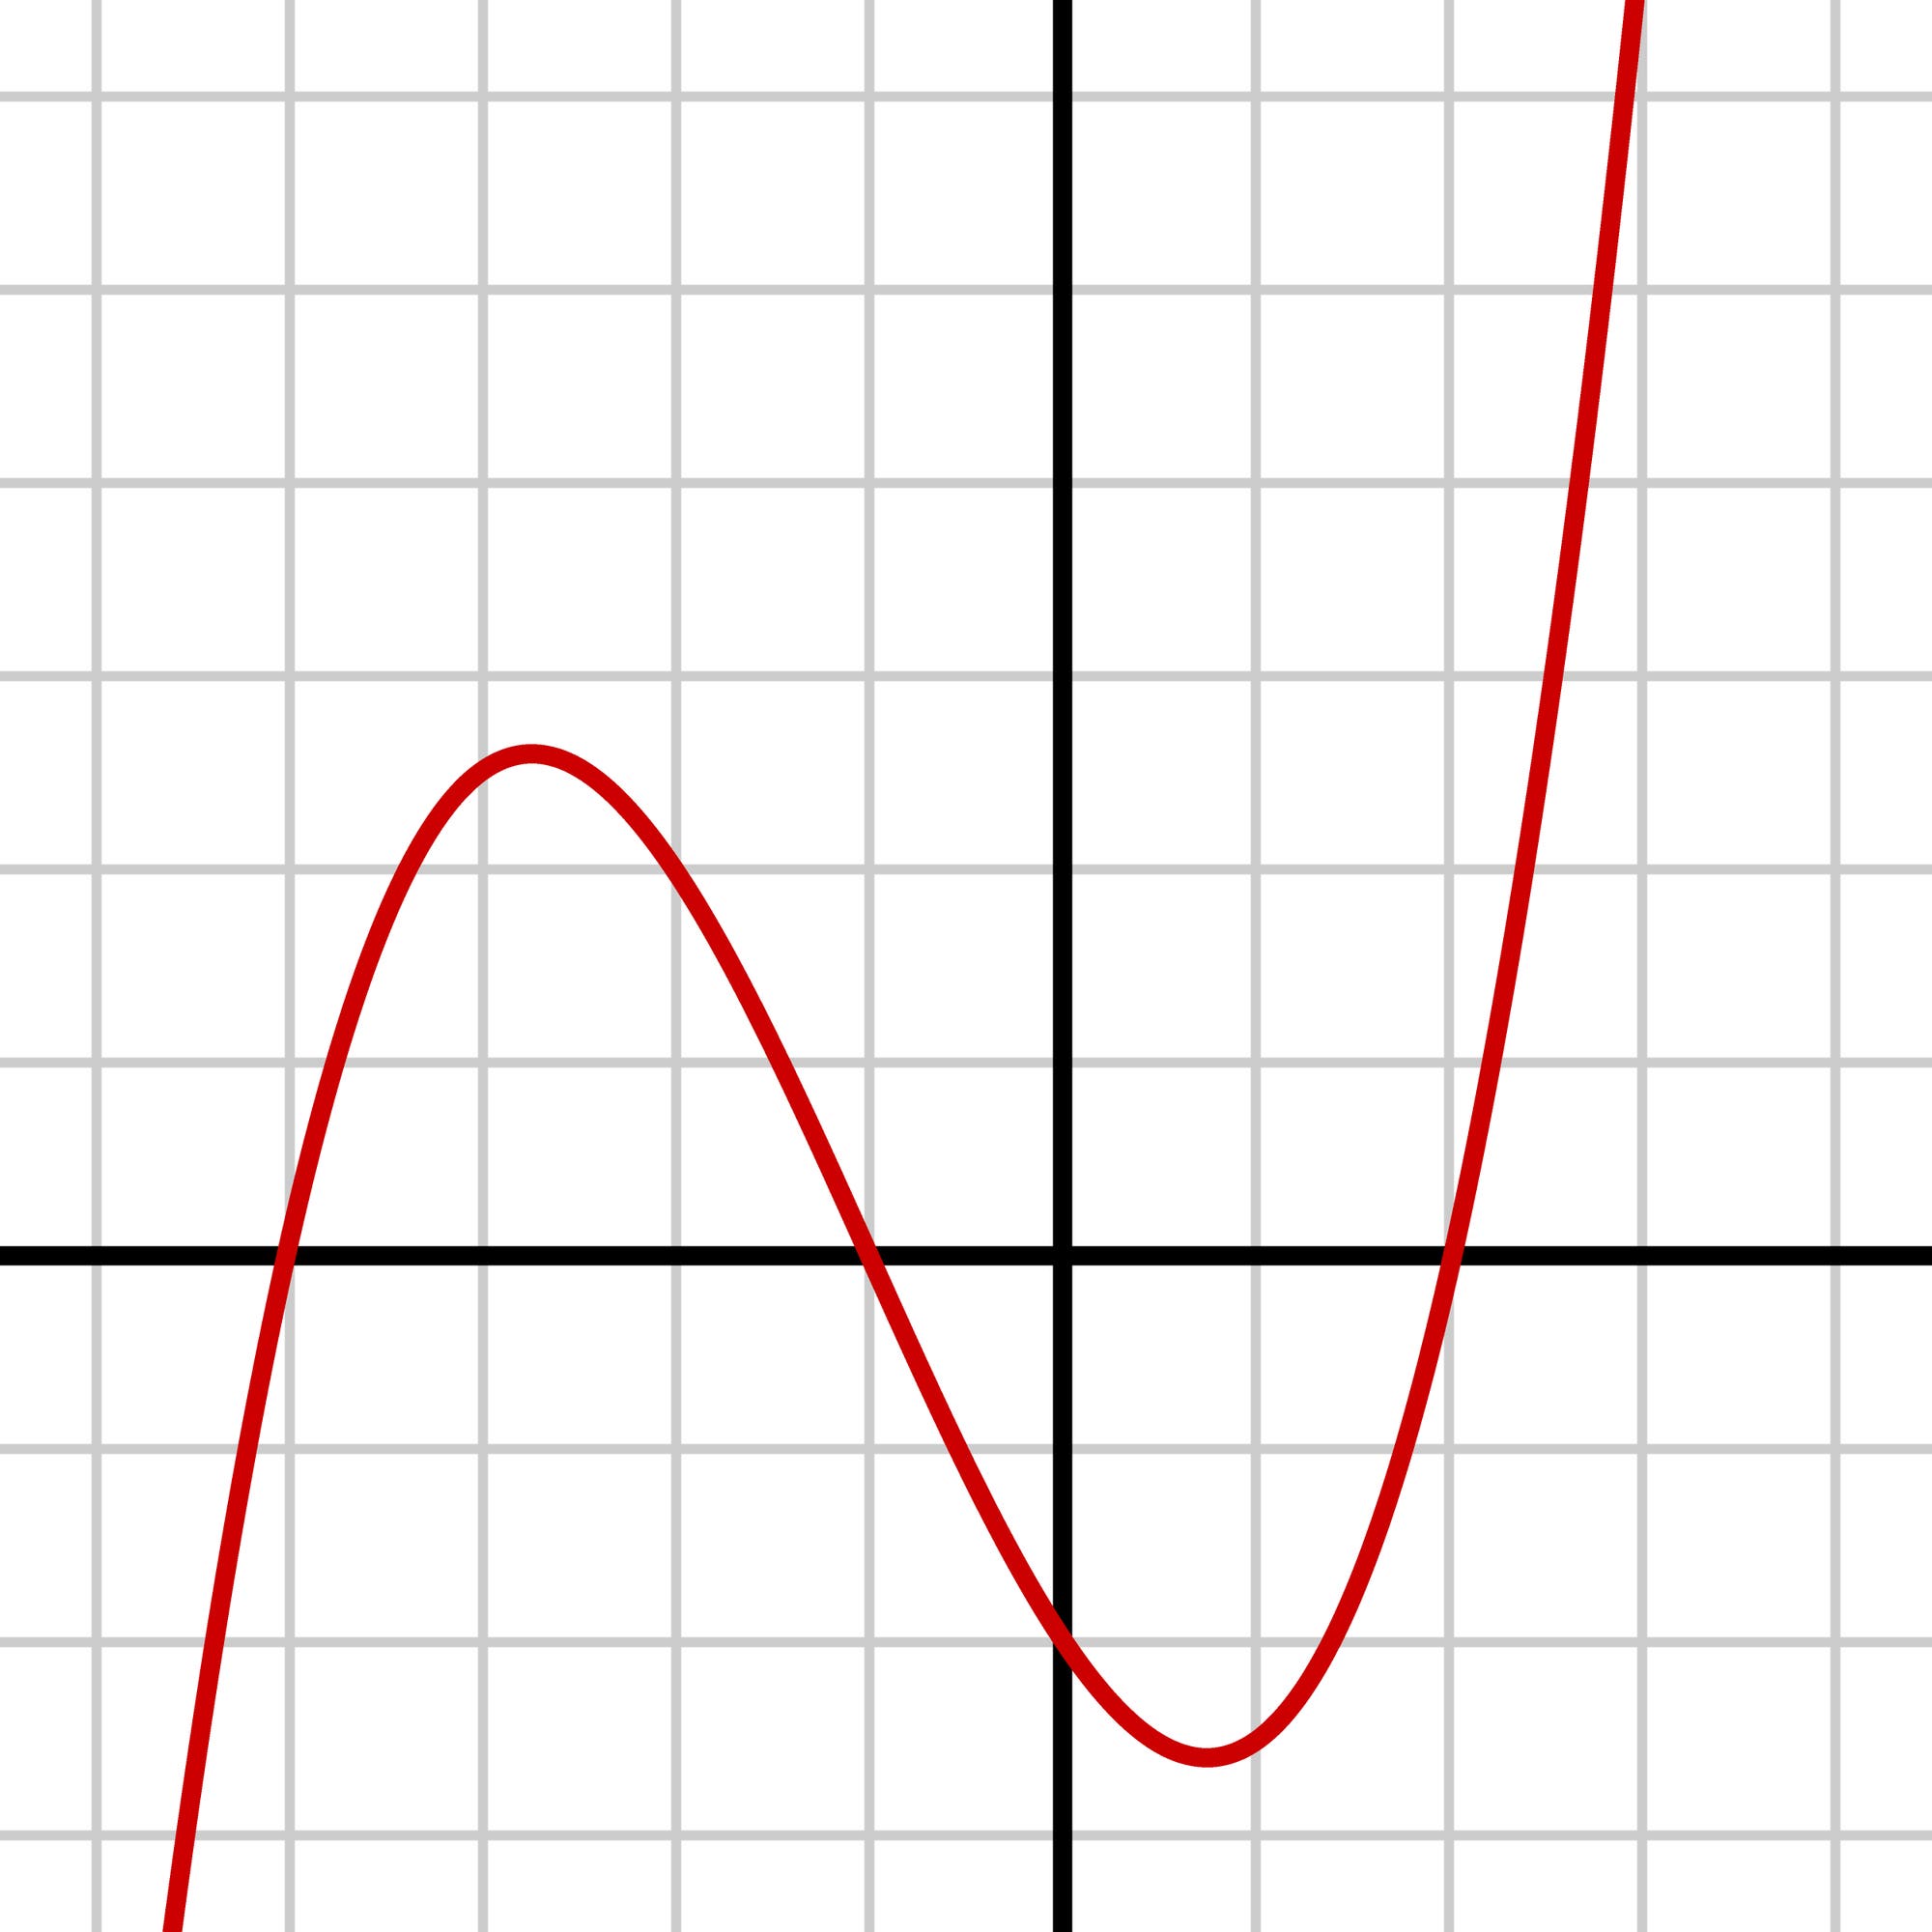 Kurve zu eine Polynom dritten Grades